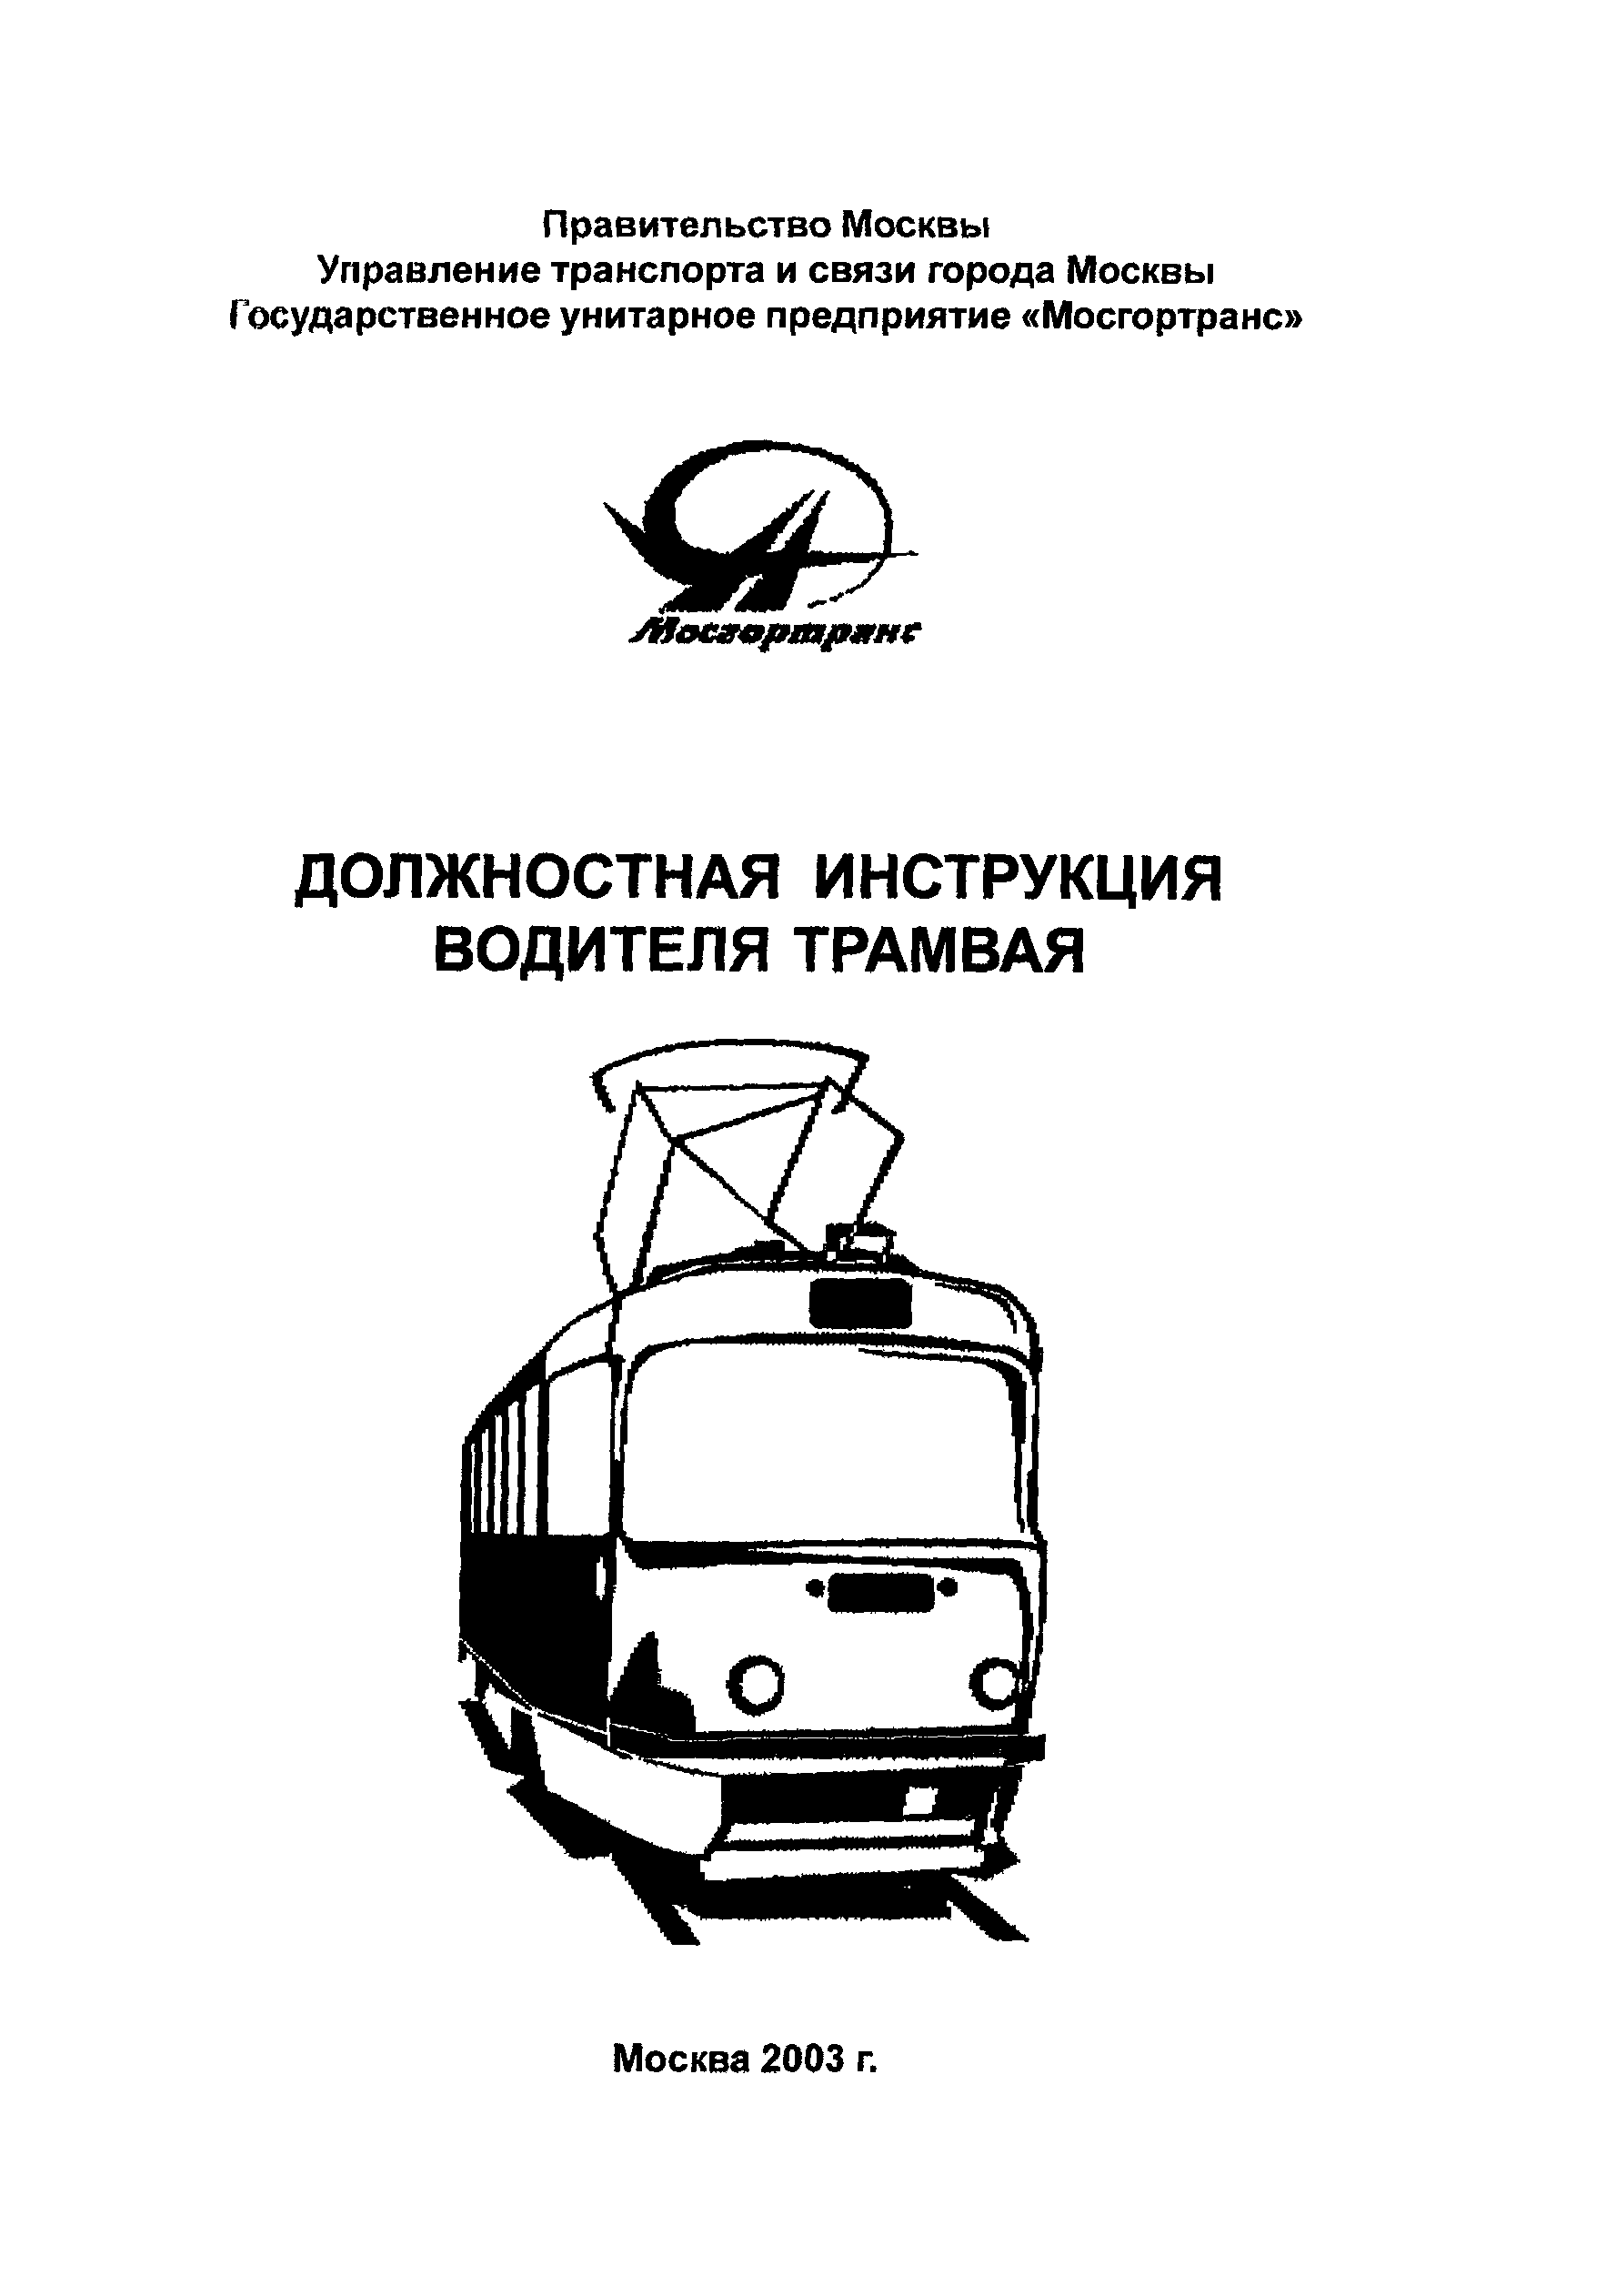 Должностная инструкция водителя трамвая ГУП Мосгортранс